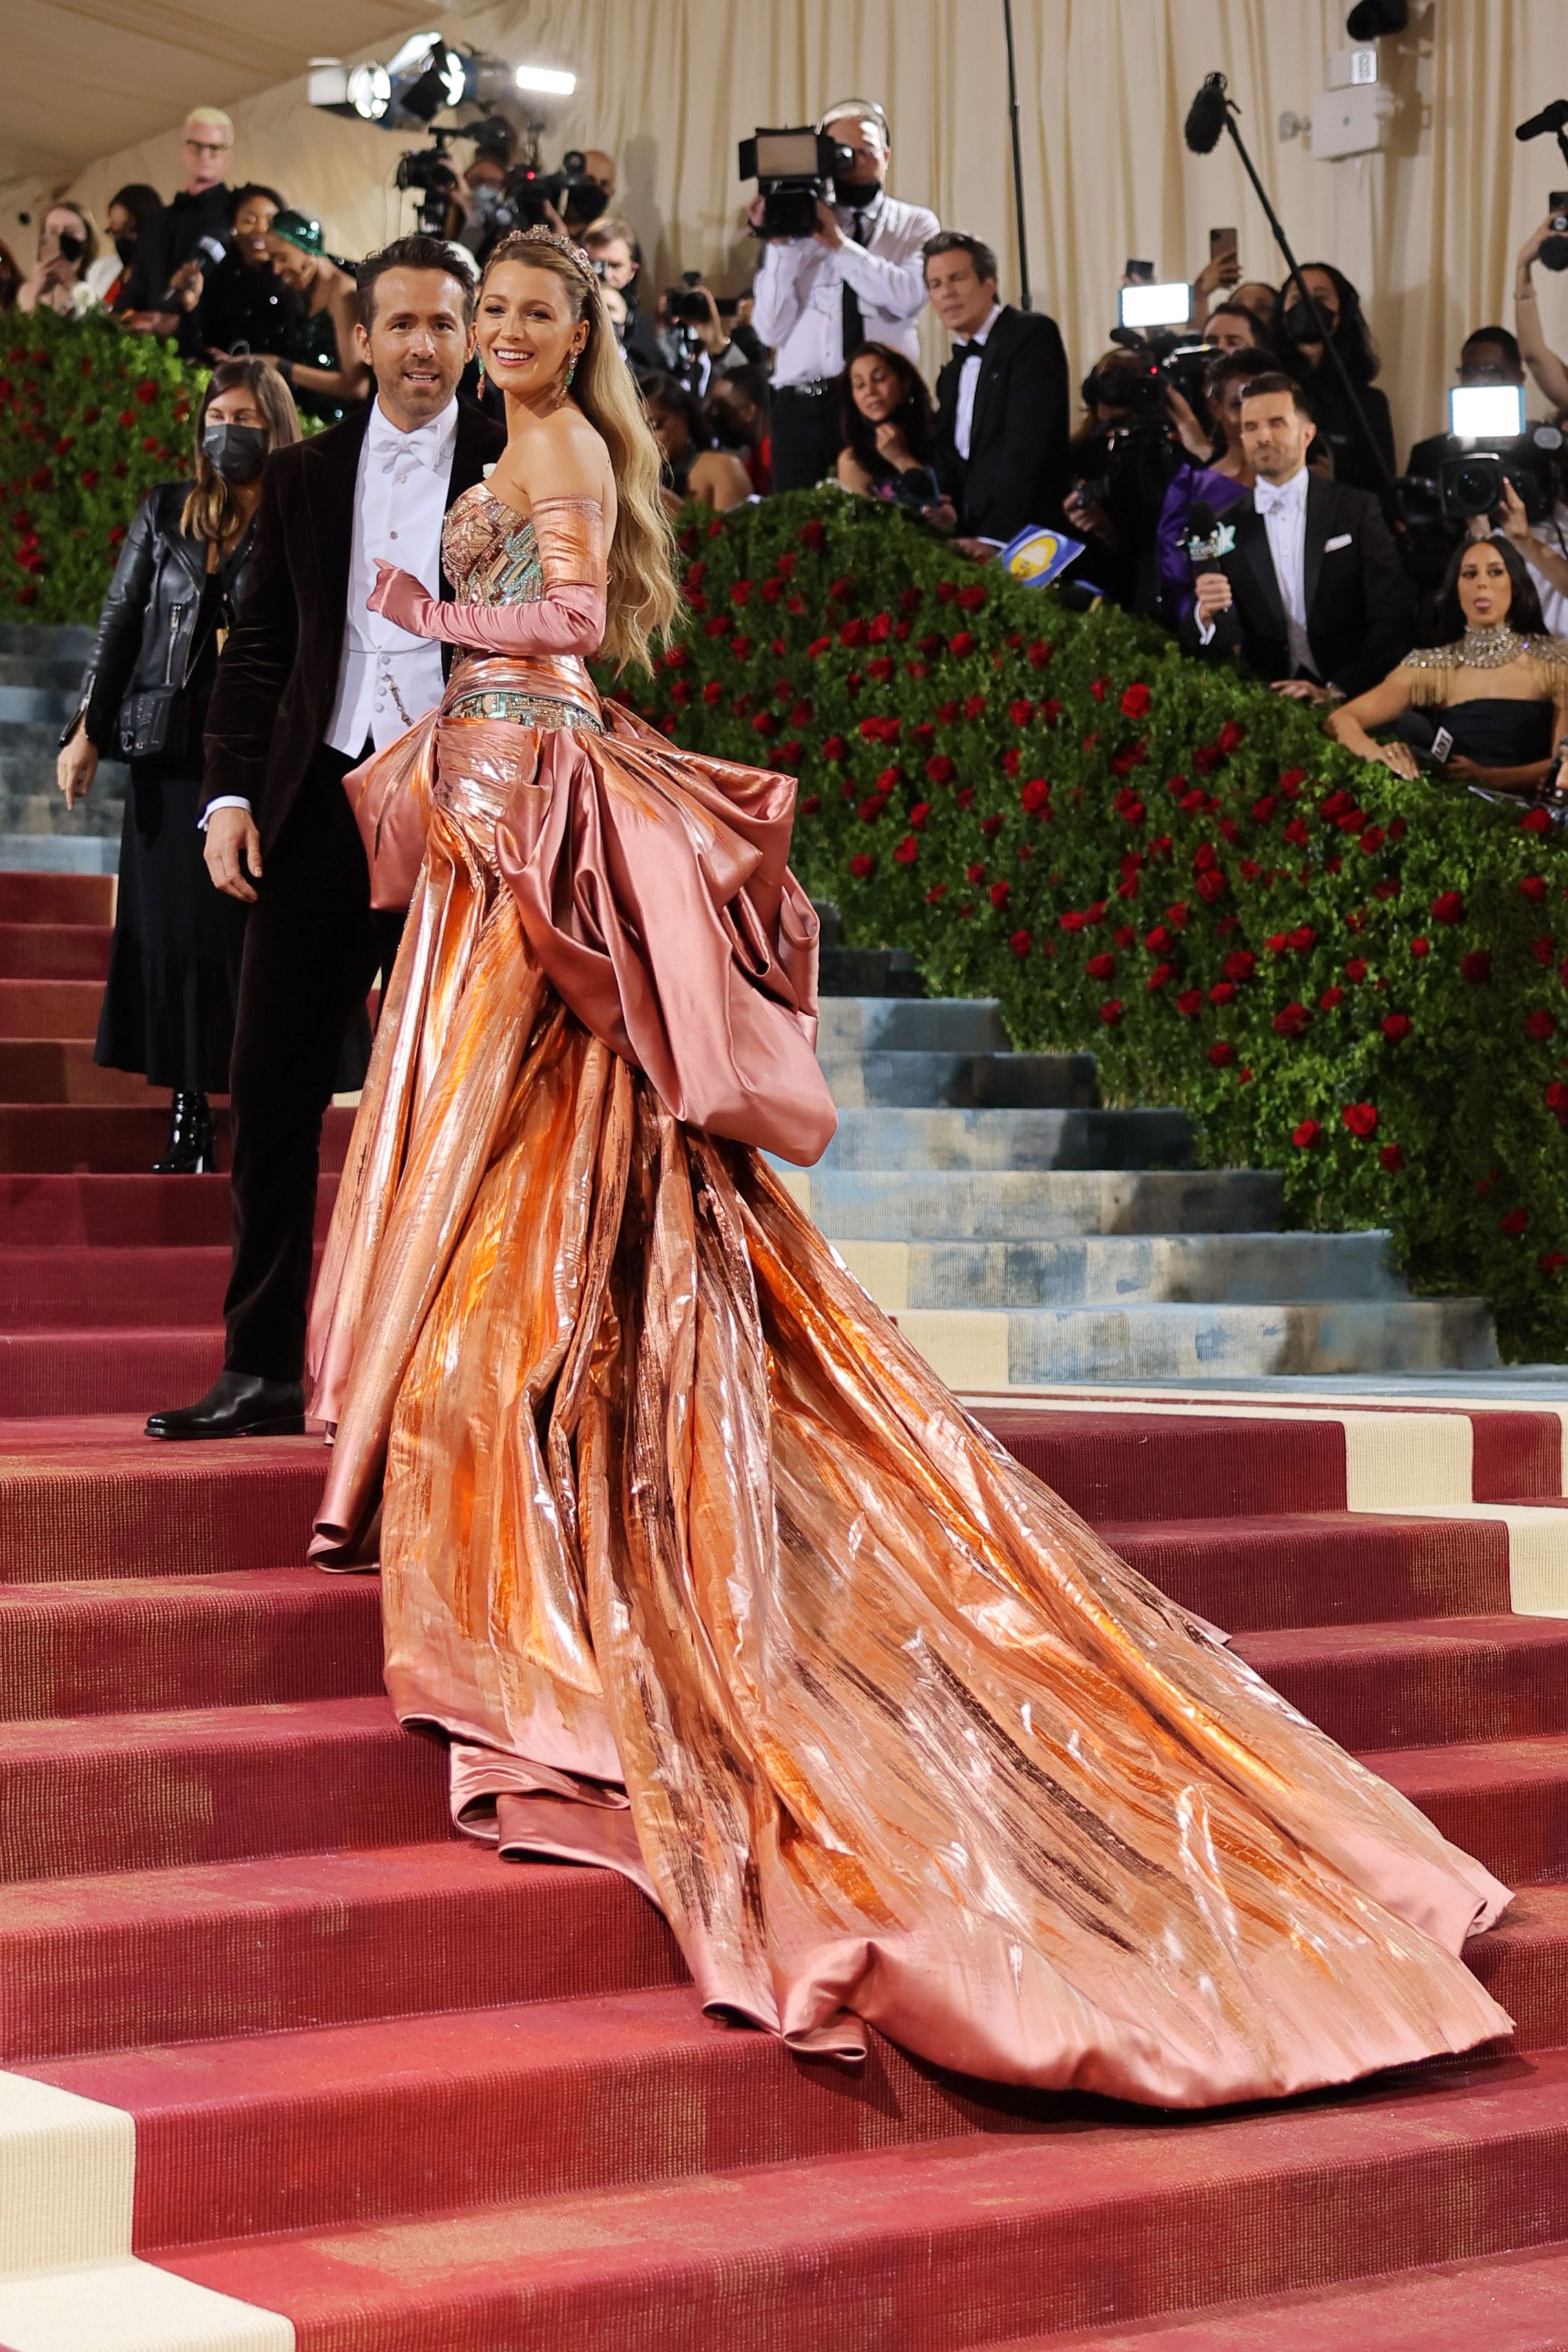 Sportschool rekken Derbevilletest Blake Lively in jurk van Atelier Versace tijdens Met Gala 2022